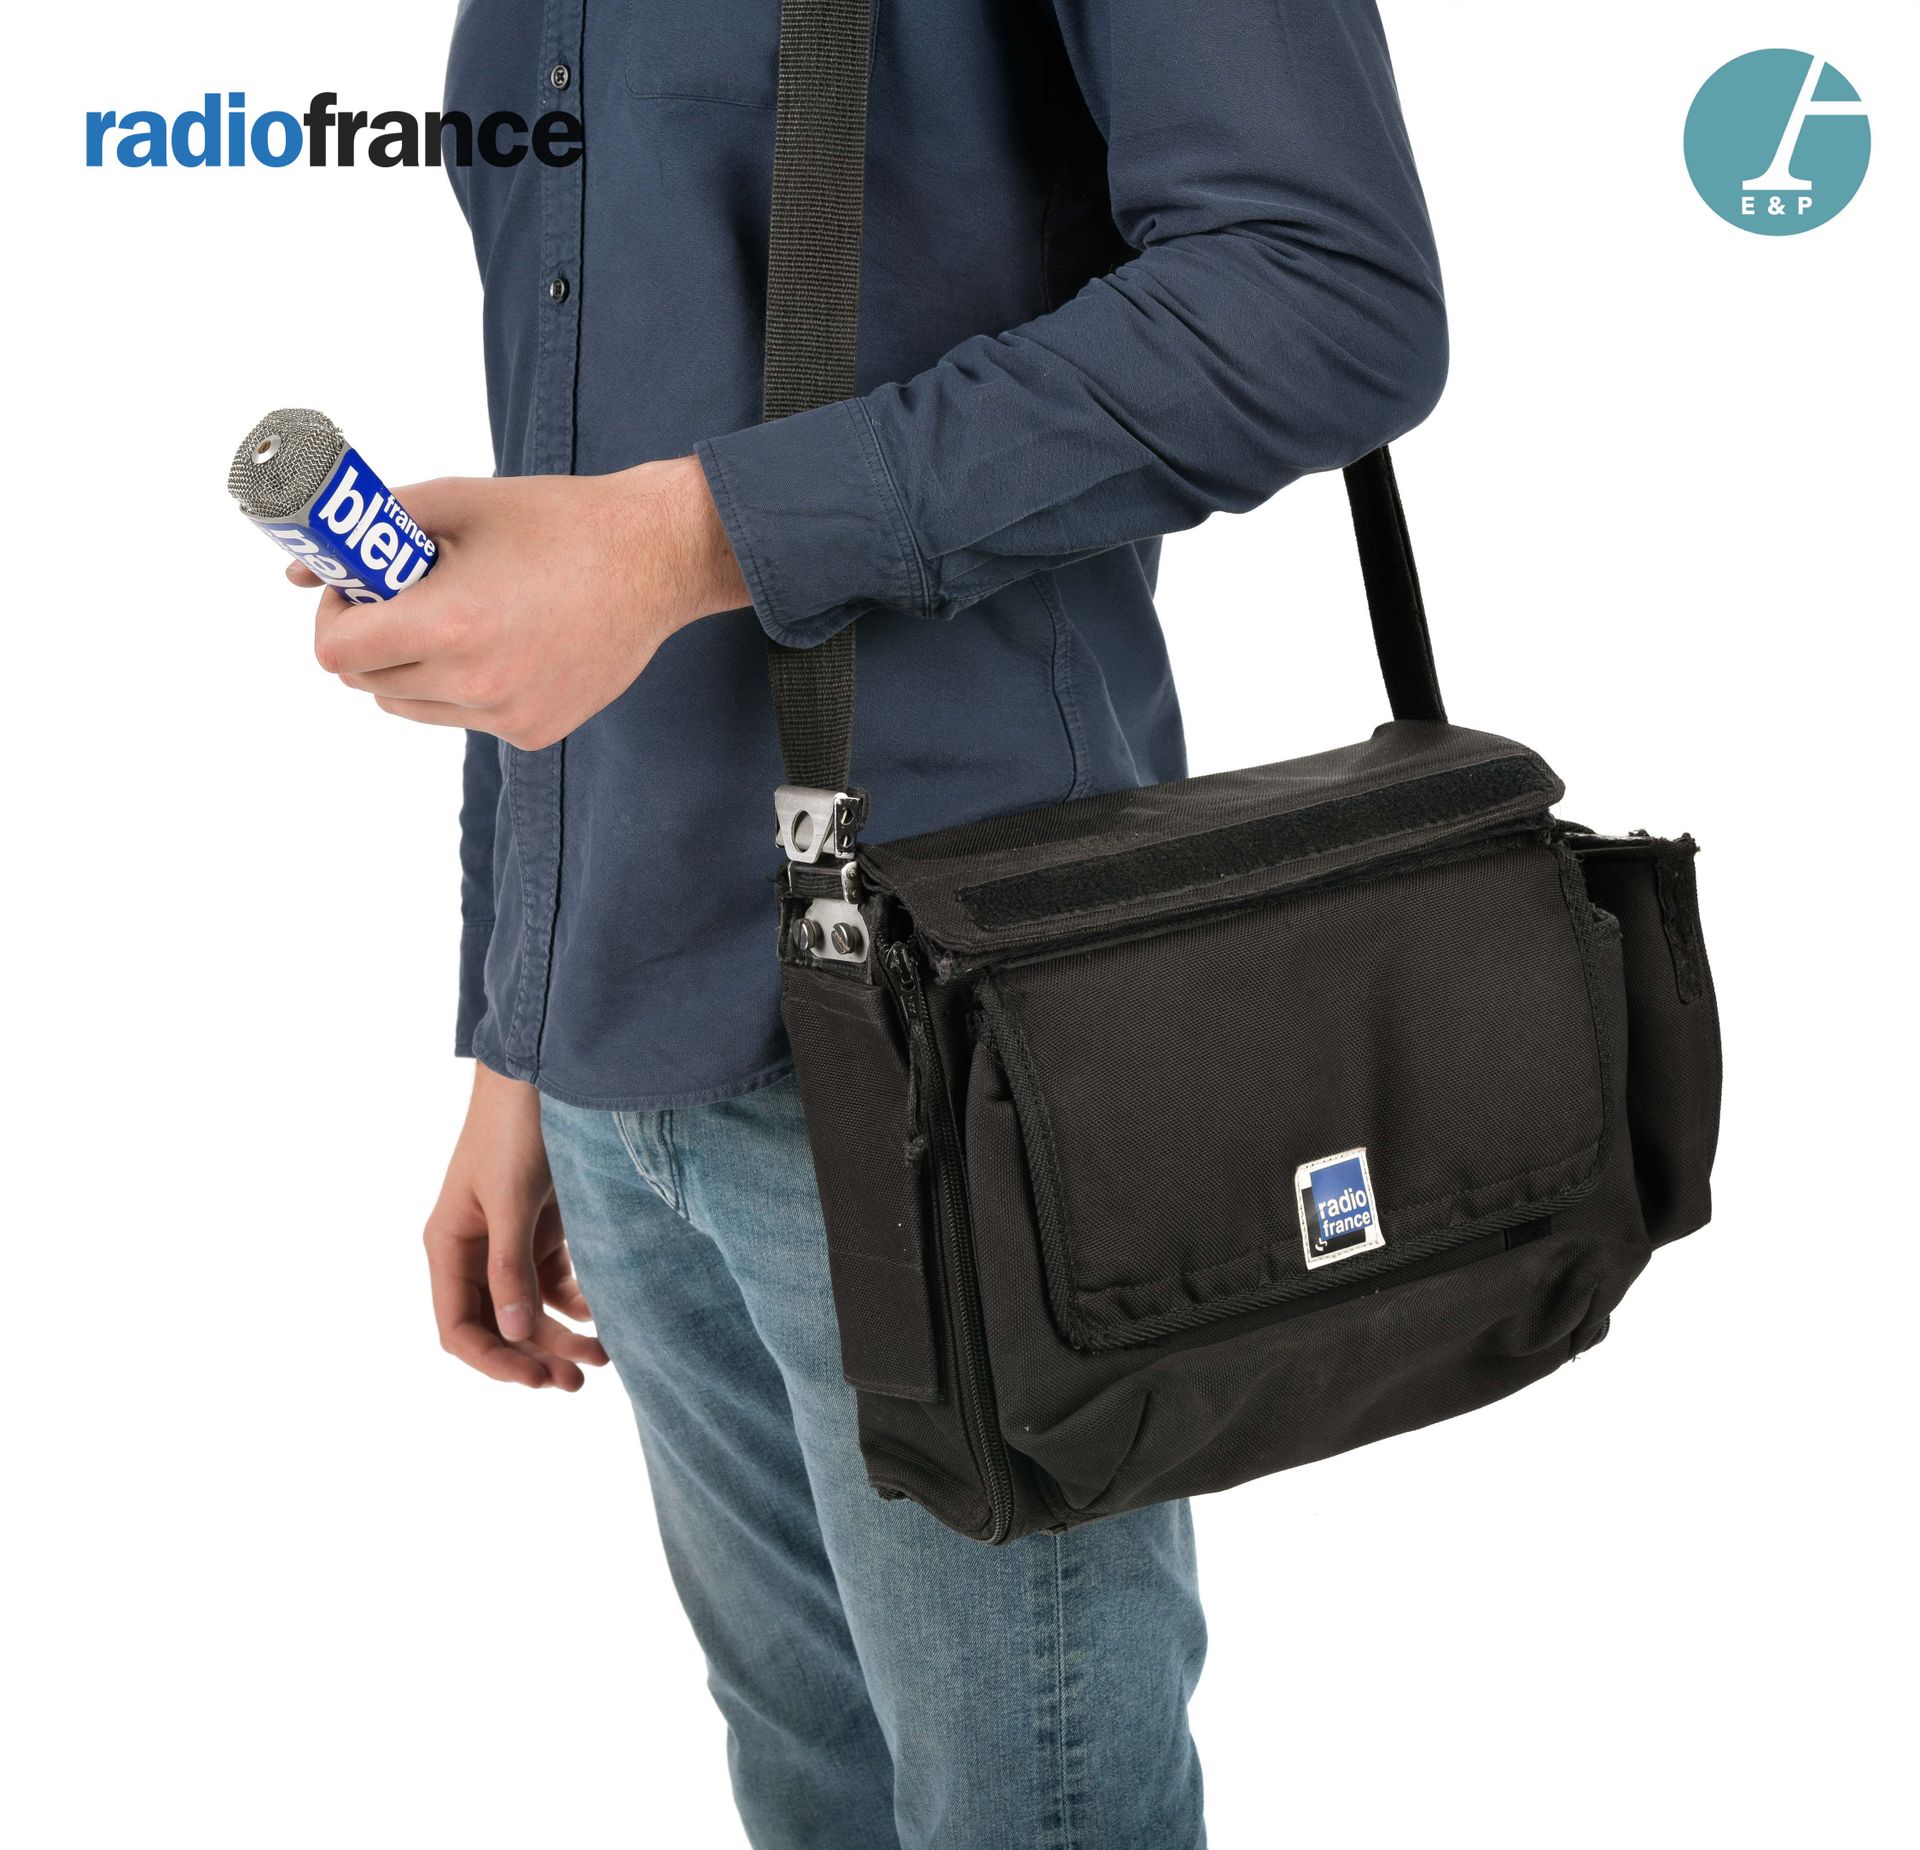 Null NAGRA数字录音机，Ares-C，带有法国广播电台标志的原始黑布袋。

带着它的麦克风和防风罩。

标签：法国布鲁图林

高：9.5厘米 - 宽：2&hellip;